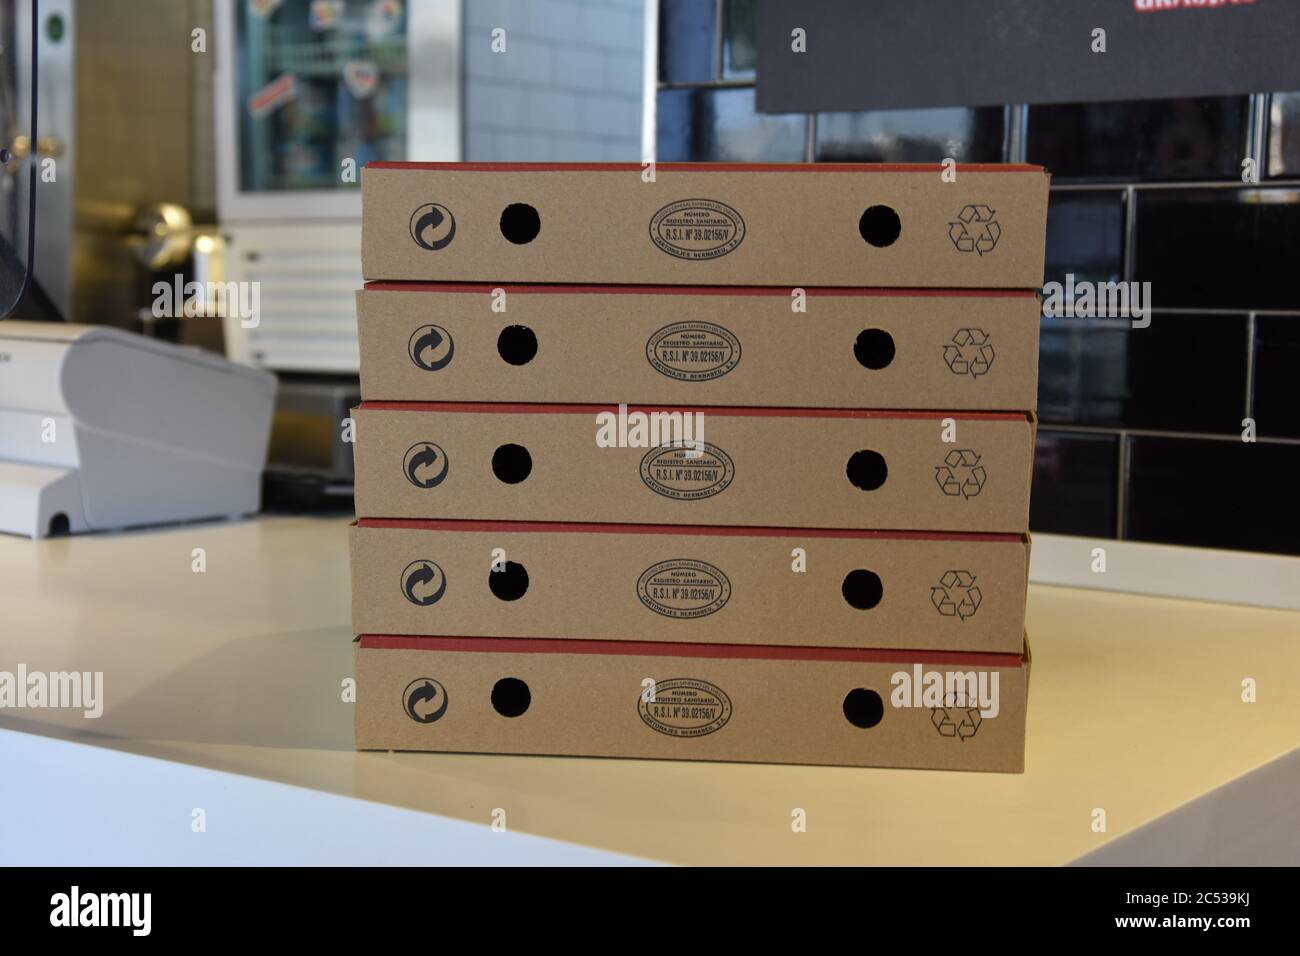 Cajas para llevar de Pizza Hut Foto de stock